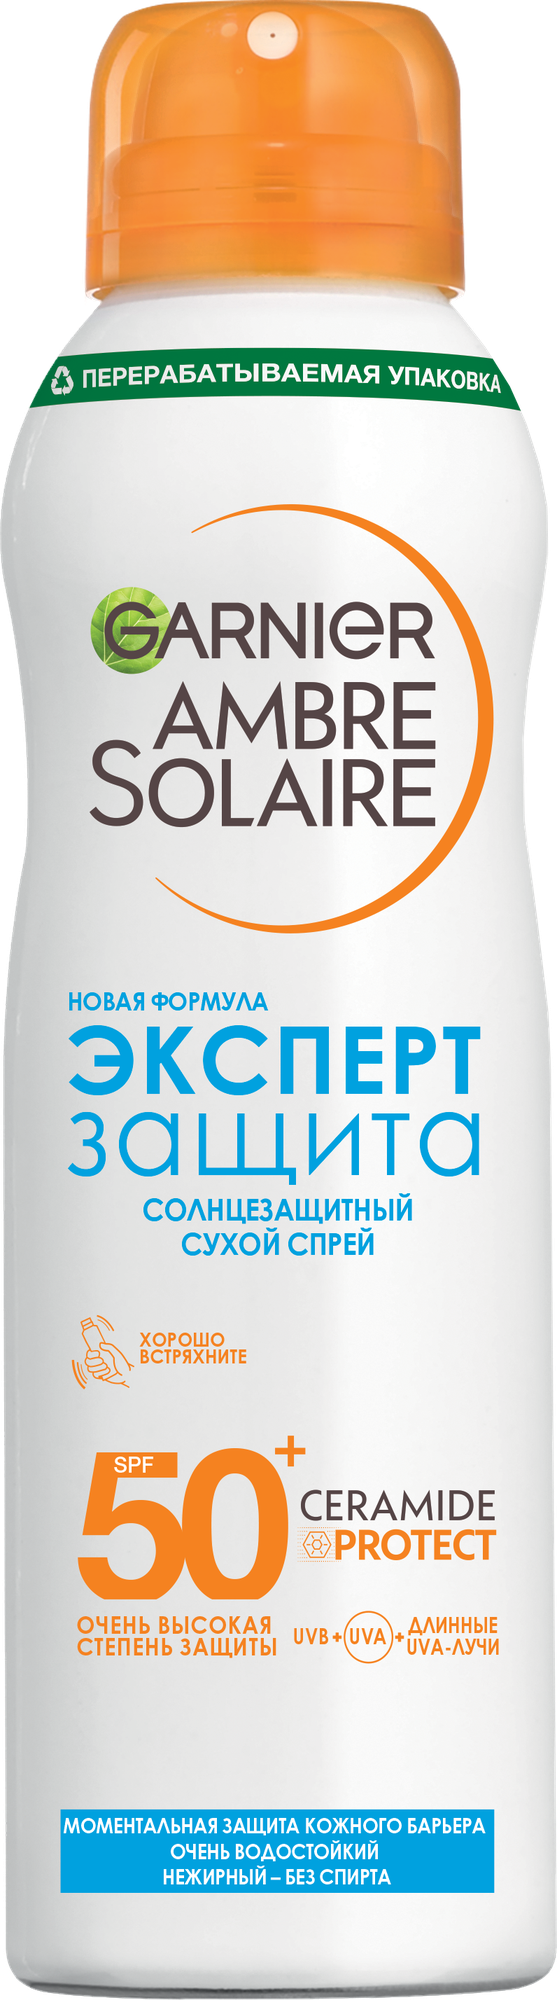 GARNIER Ambre Solaire солнцезащитный сухой спрей для тела Эксперт Защита SPF 50